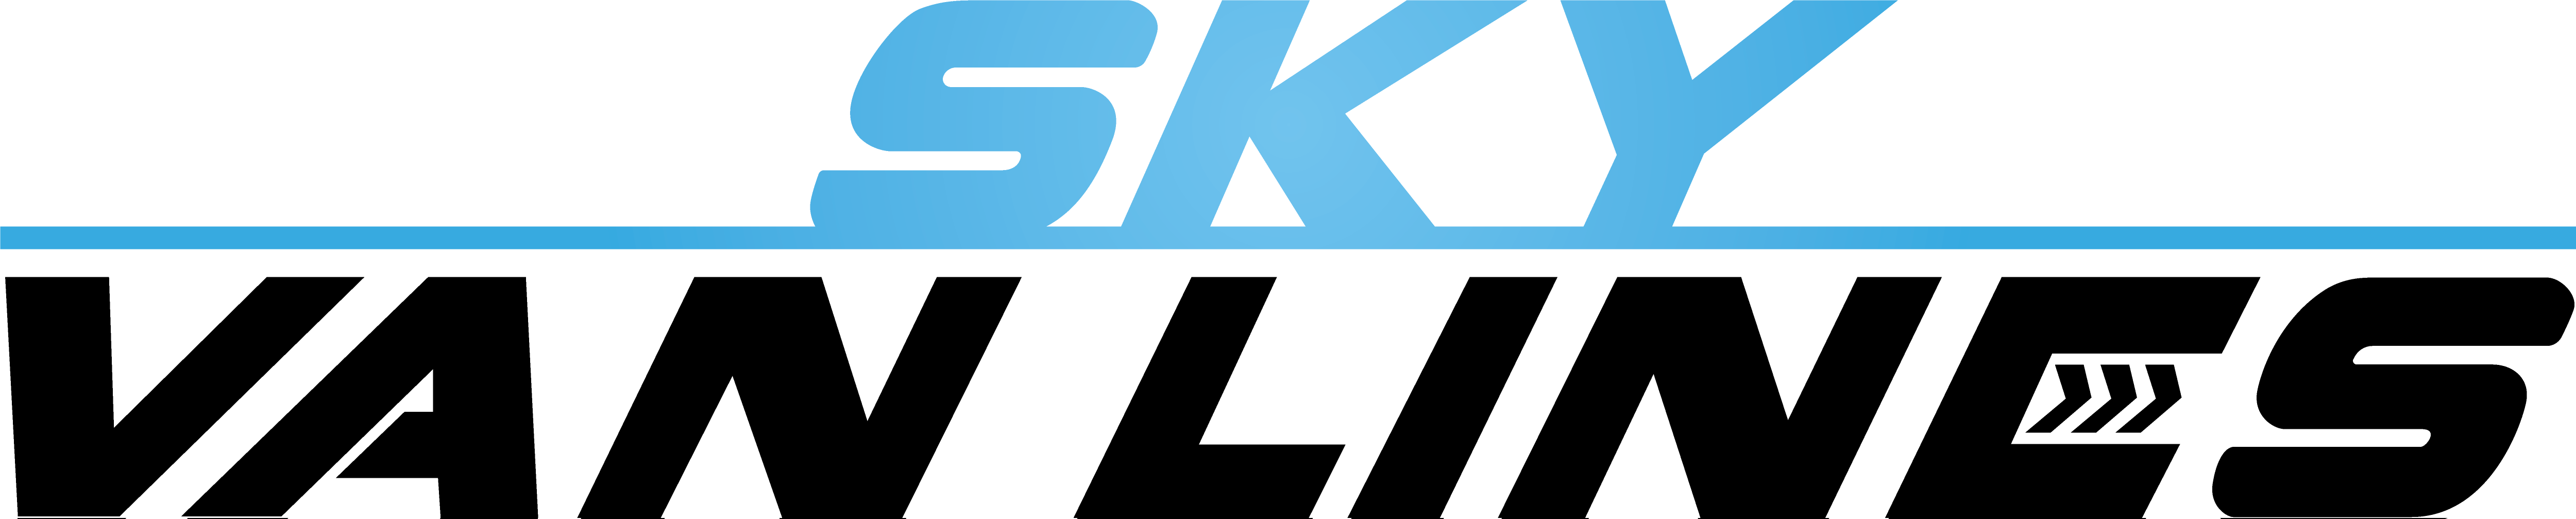 Sky-Van-Lines-Logo-2.png